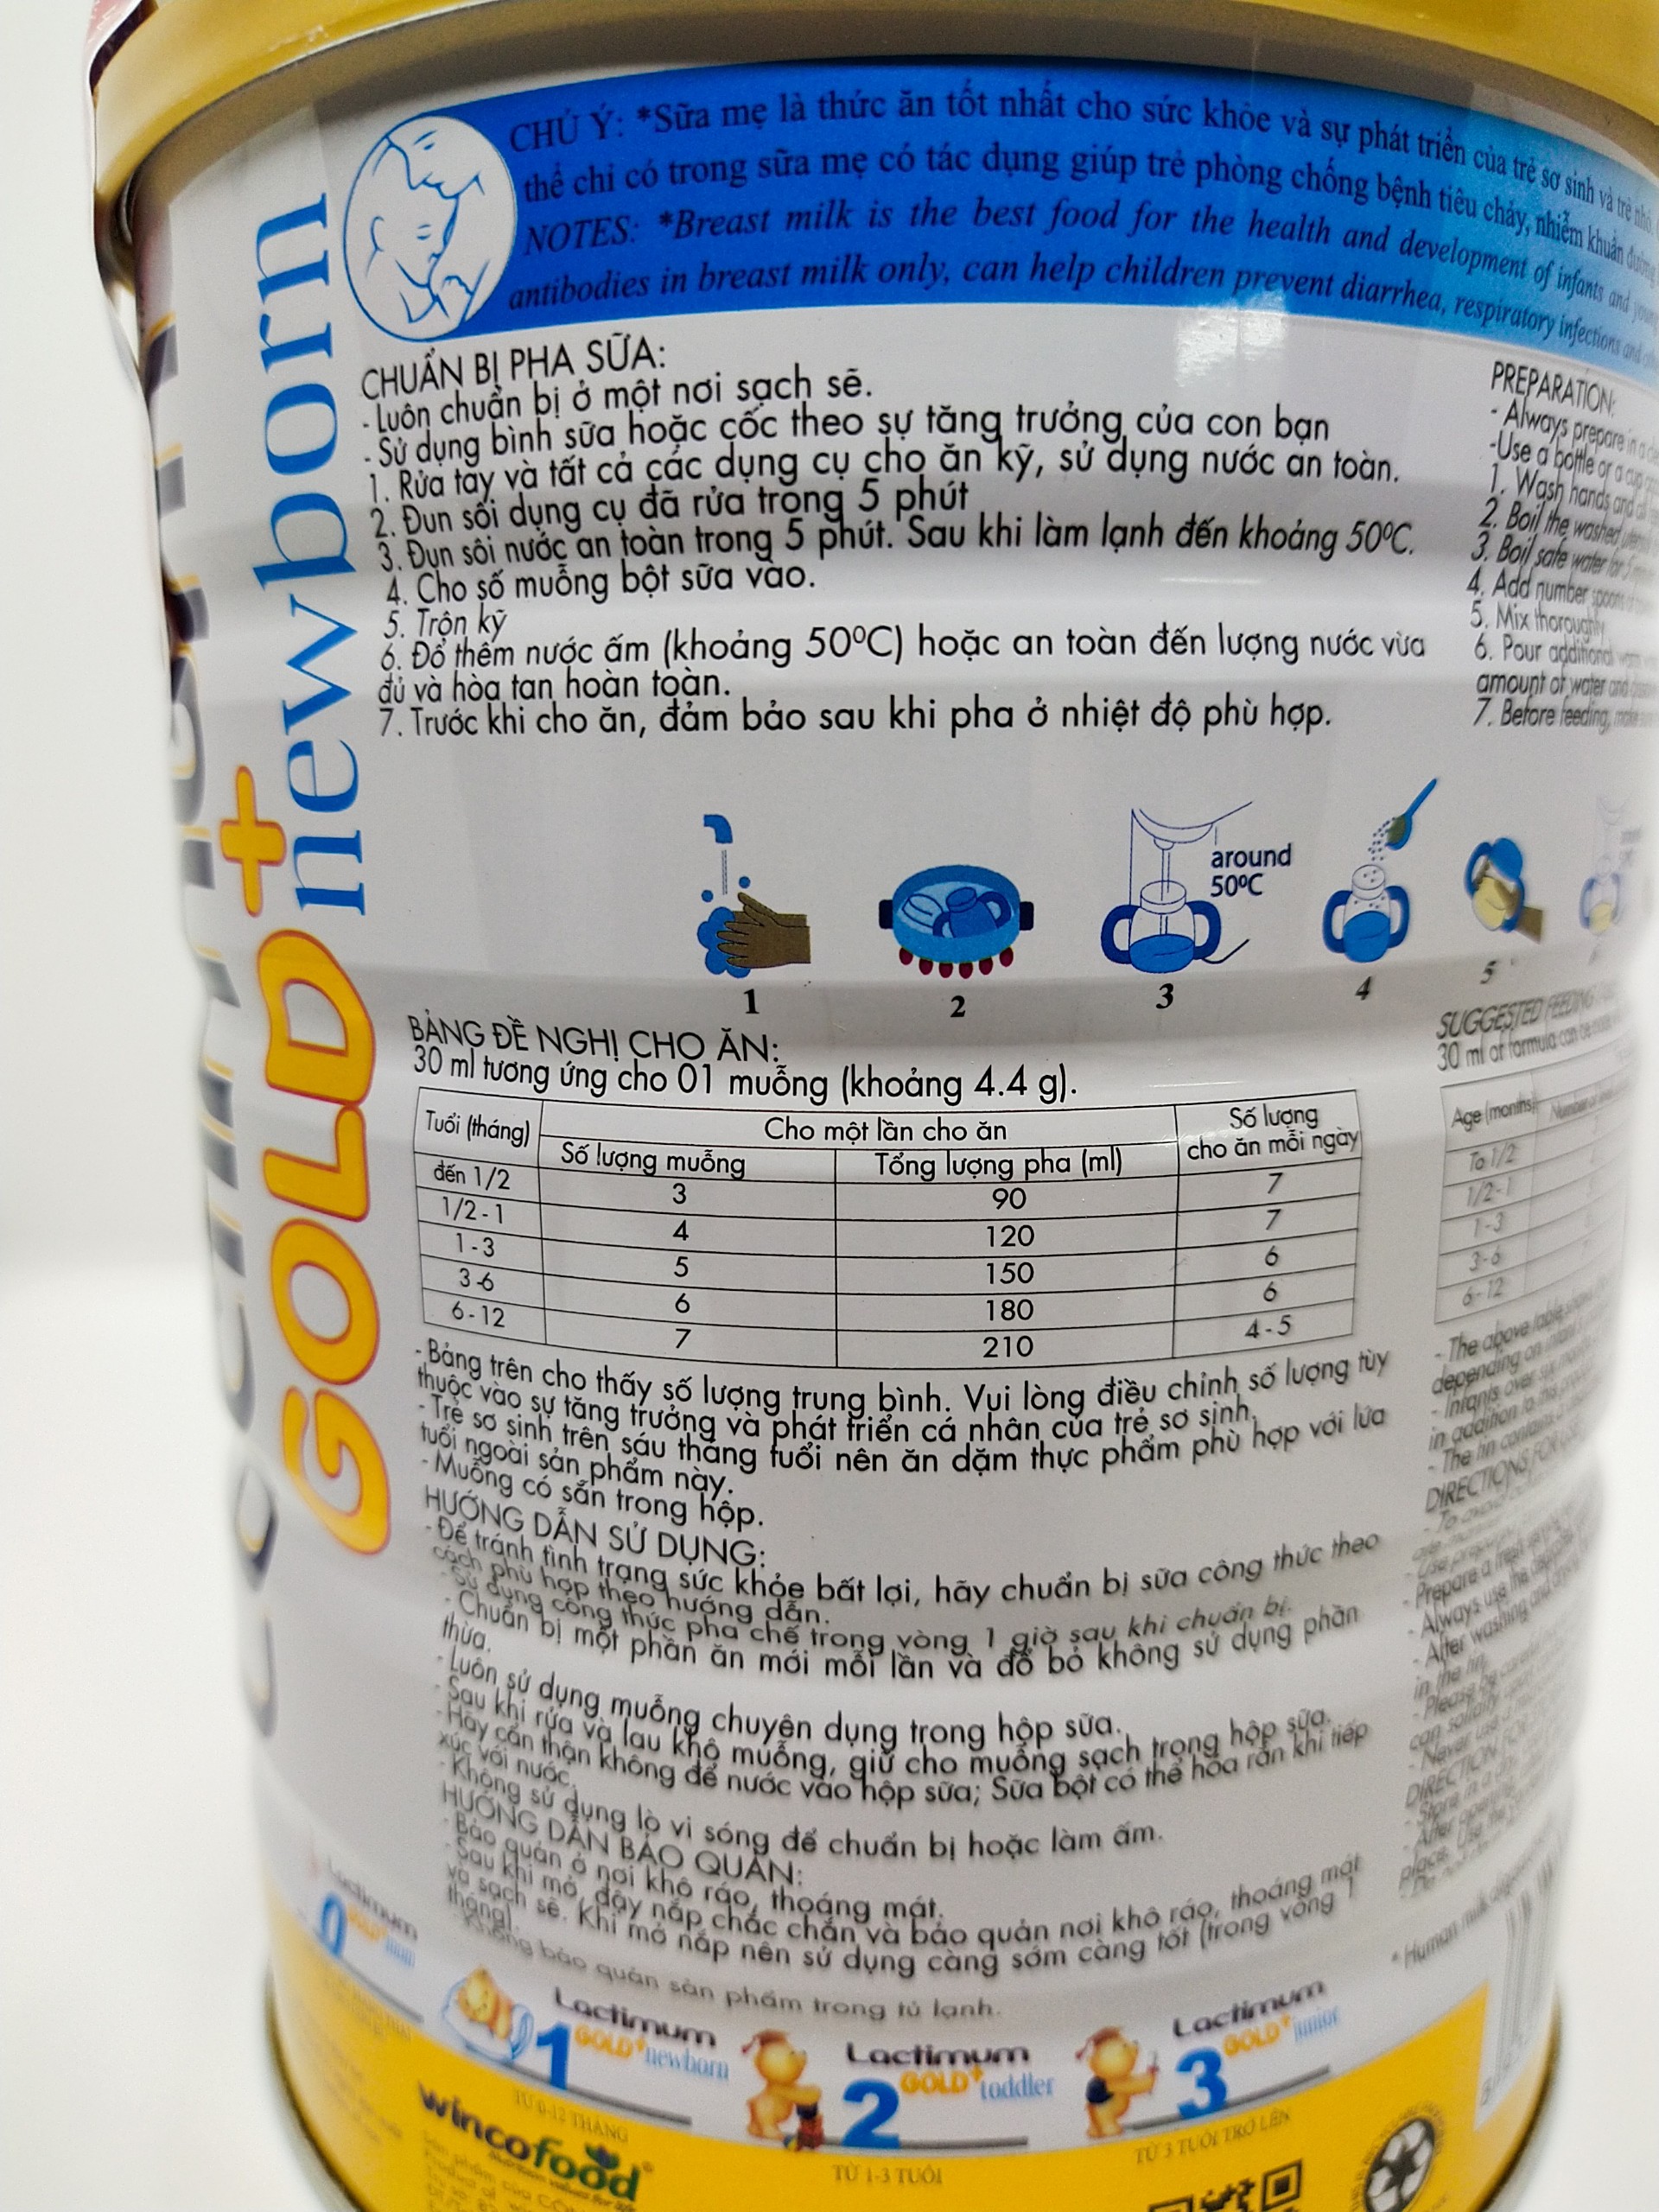 2 Hộp Sữa Bột Wincofood Lactimum Gold + Newborn 1: 0 – 12 tháng tuổi (900 gam) (Tặng nón bảo hiểm Wincofood)